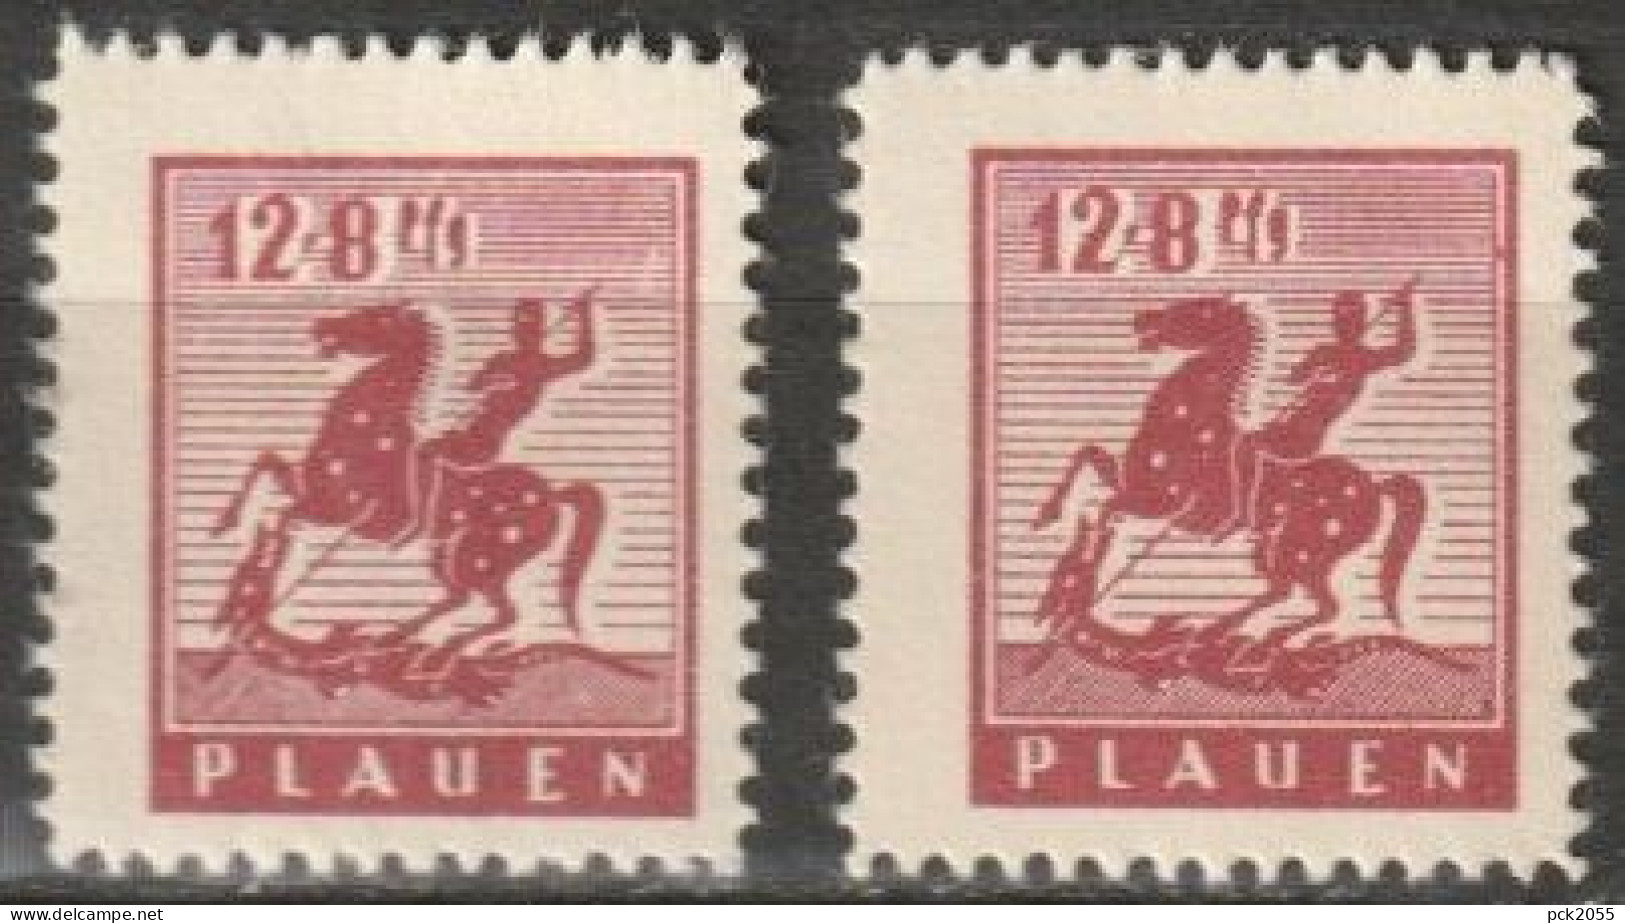 Plauen 1945 MiNr.5 X +y ** Postfrisch Denkmal ( B 1415) Günstige Versandkosten - Mint